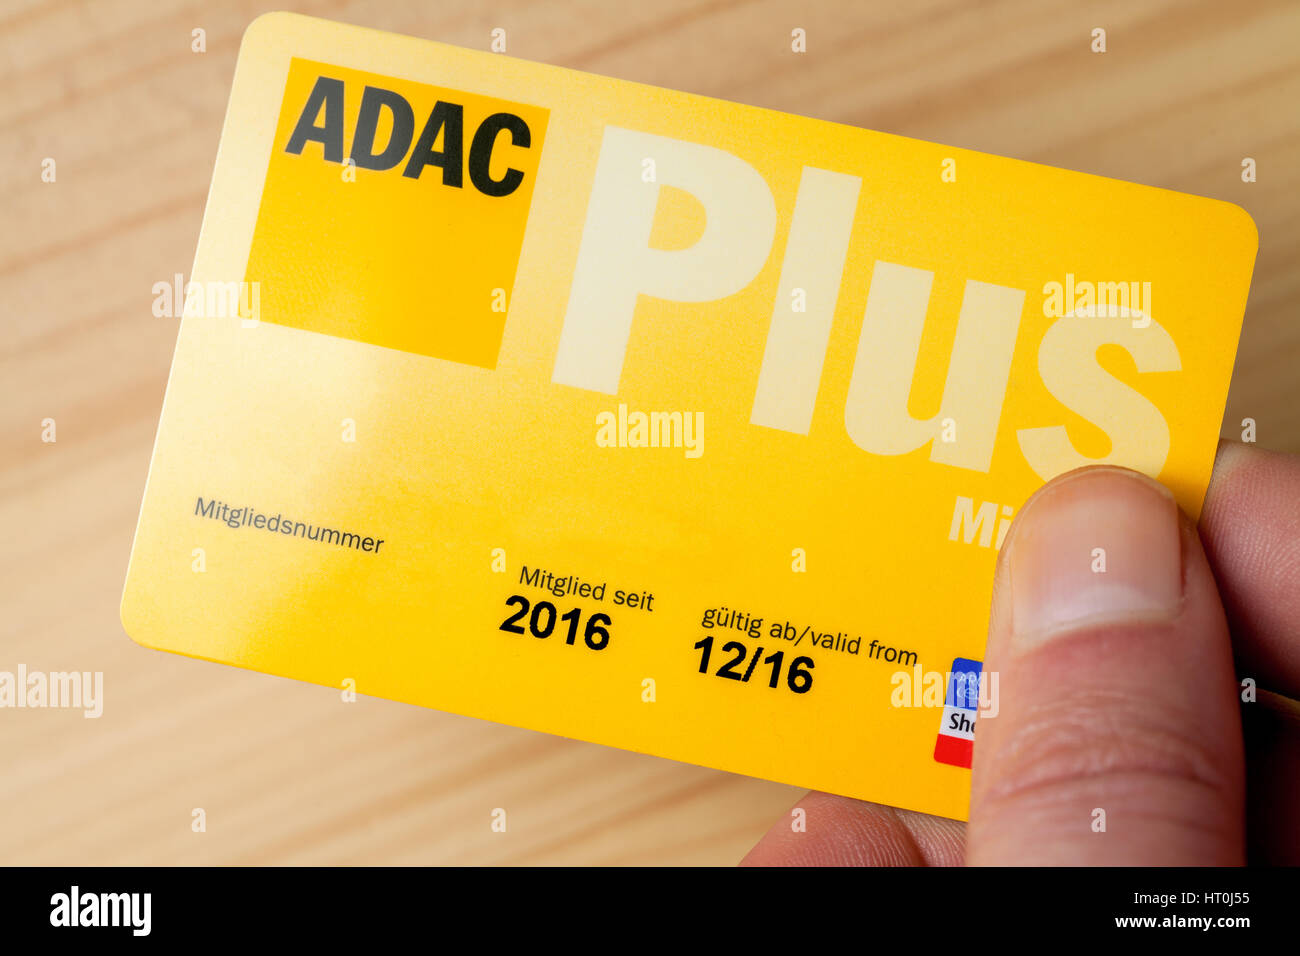 Landesbergen/Deutschland - vom 5. März, 2017: Hand hält ein adac (Adac)  Club Card Stockfotografie - Alamy